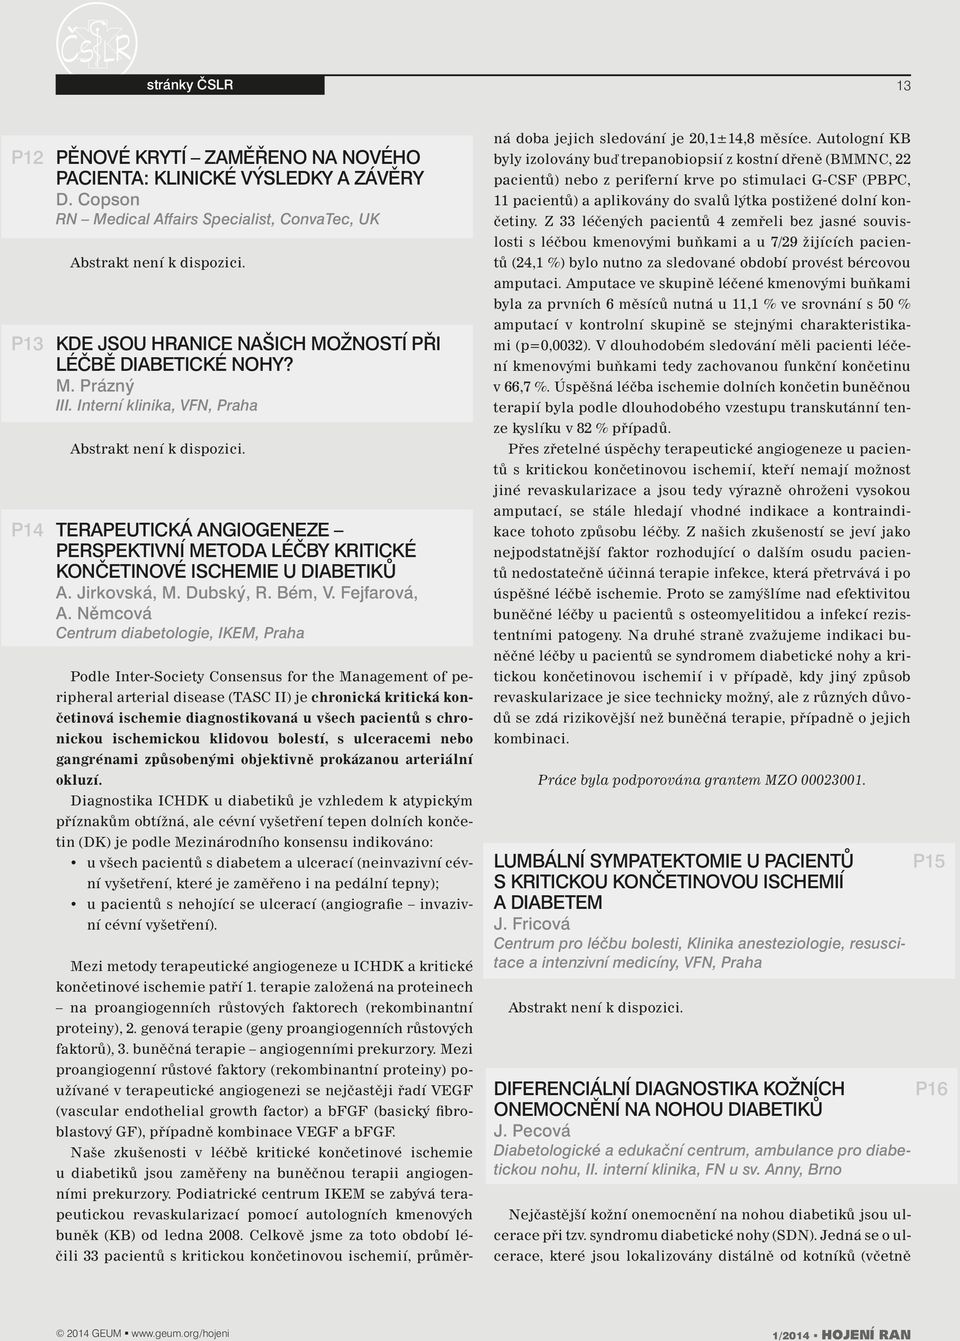 Terapeutická angiogeneze perspektivní metoda léčby kritické končetinové ischemie u diabetiků A. Jirkovská, M. Dubský, R. Bém, V. Fejfarová, A.